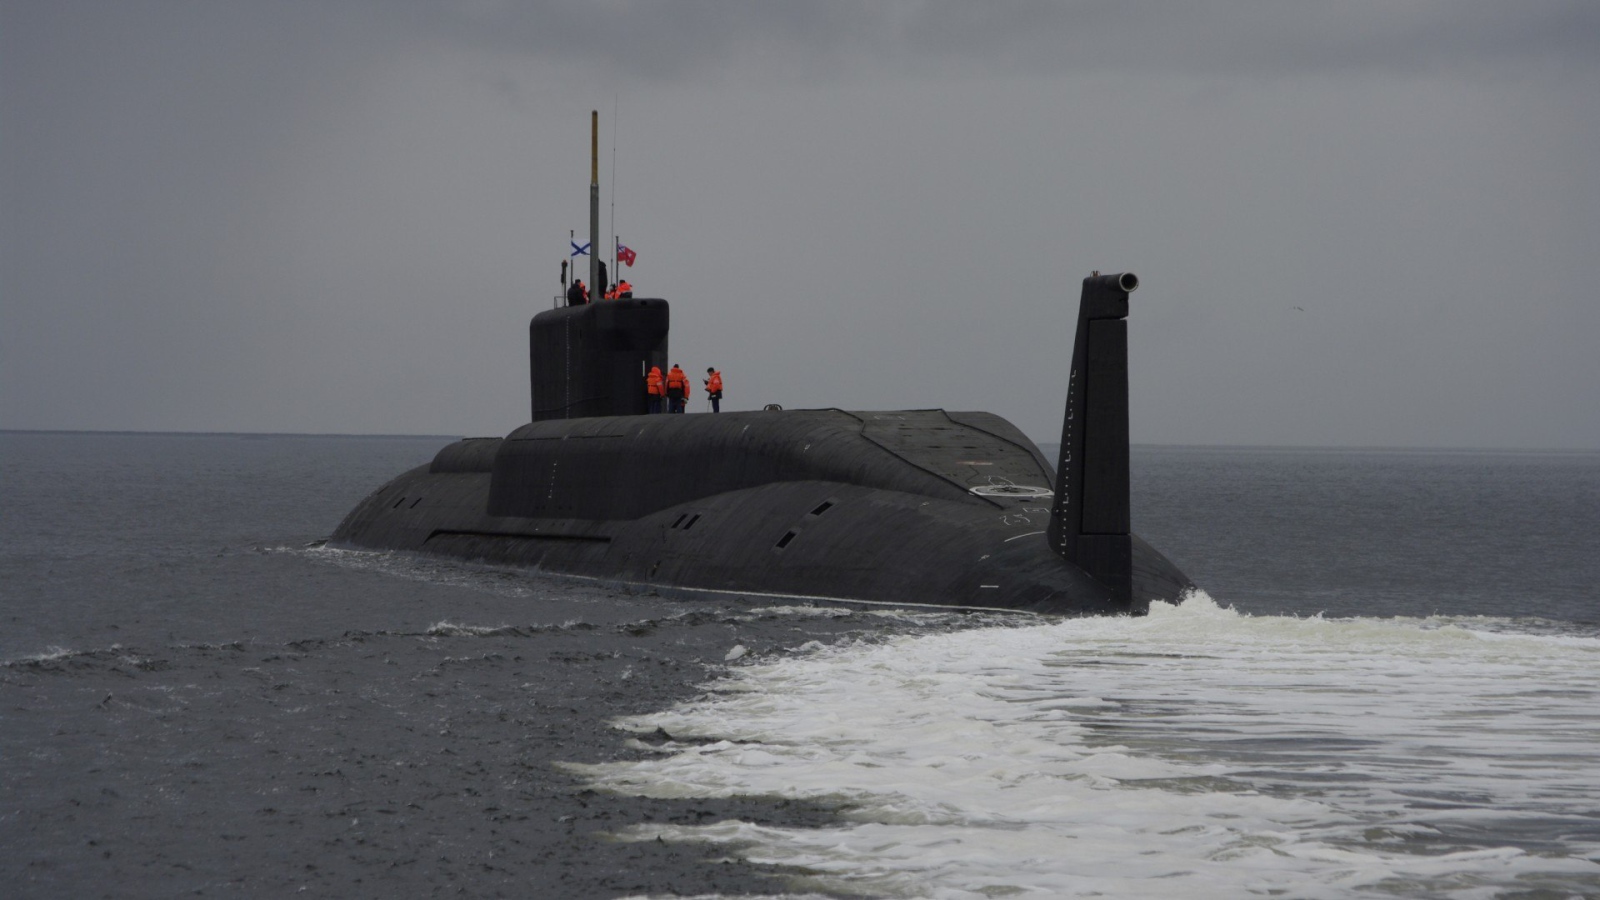 Подводная лодка флота России